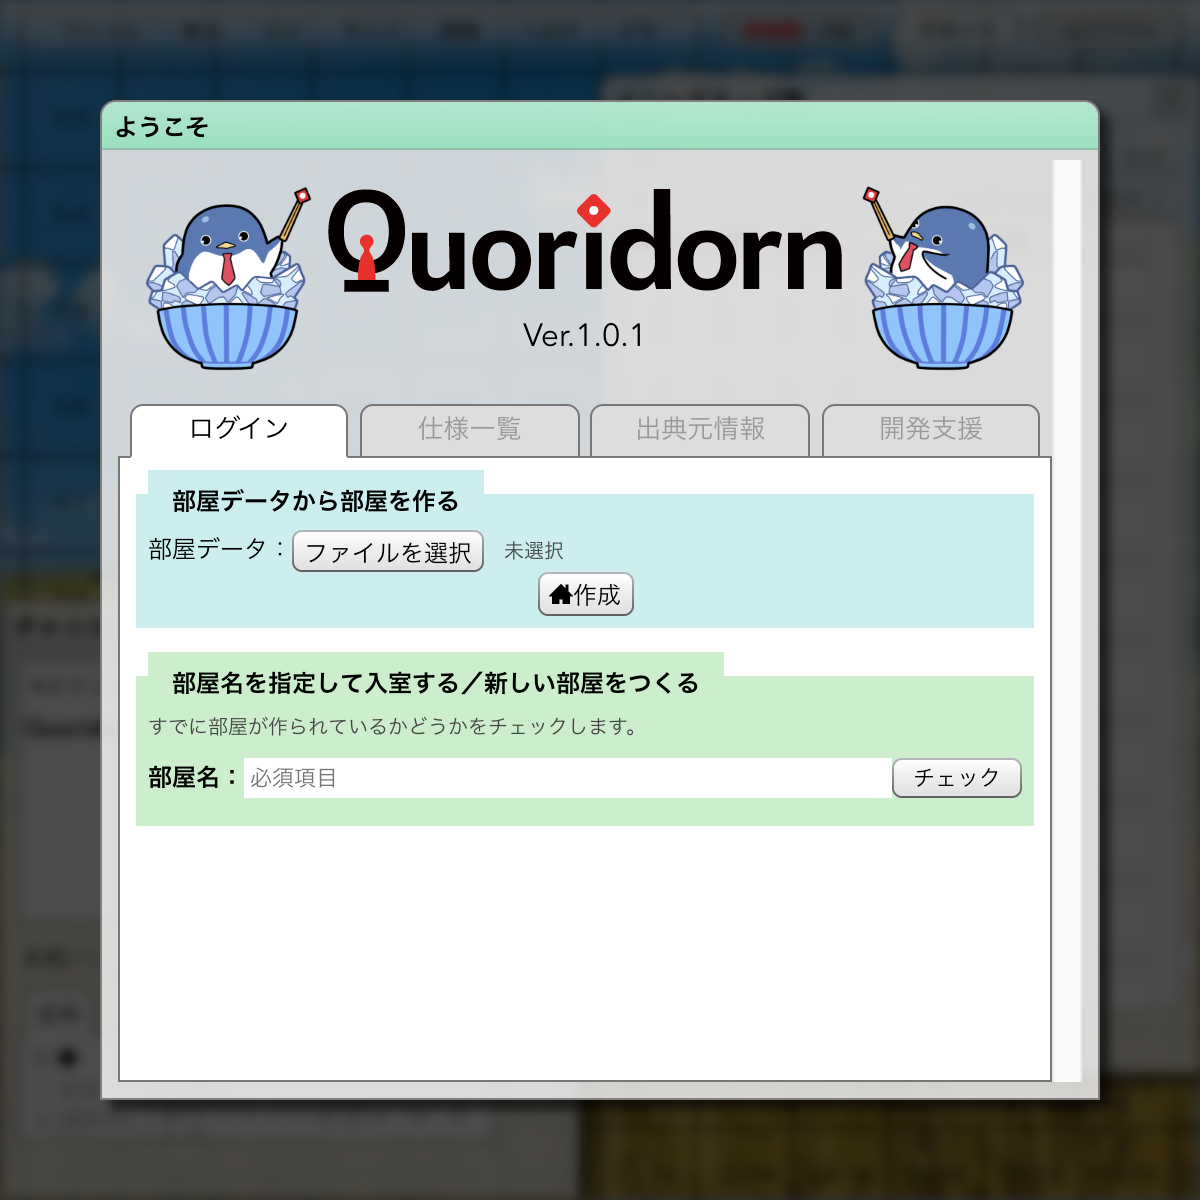 ようこそ画面 Quoridorn Trpgオンセツール Wiki